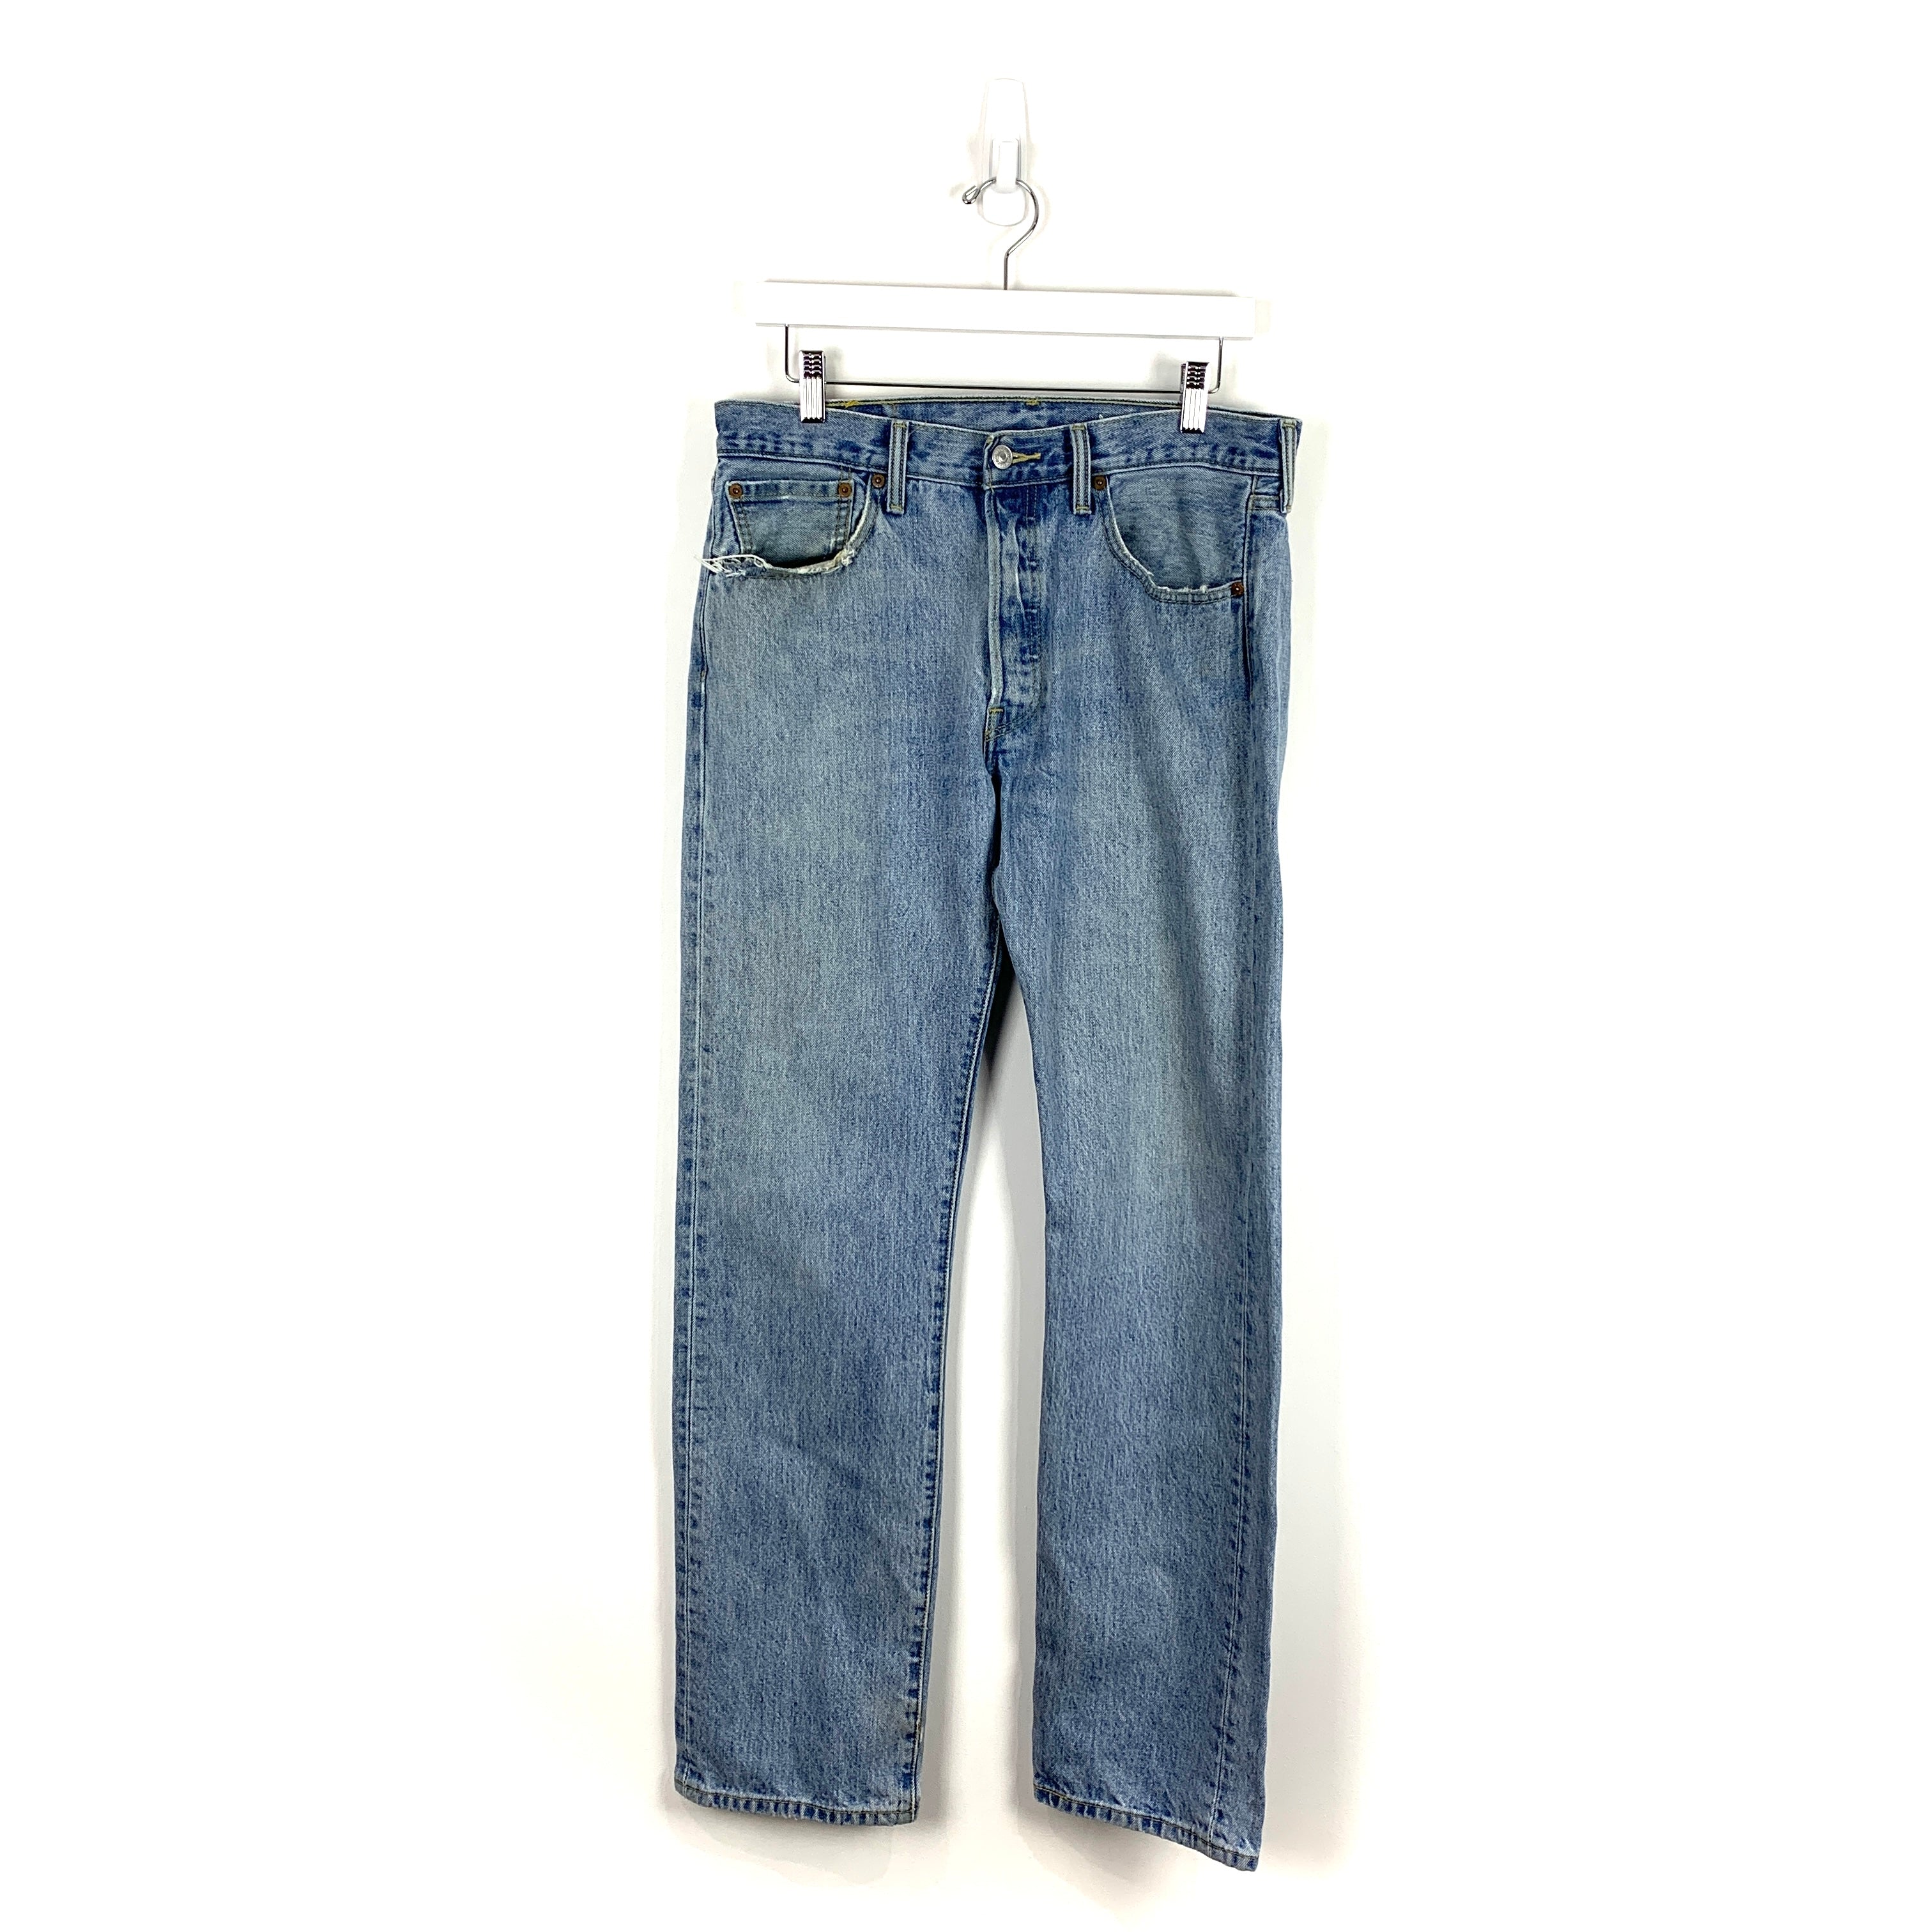 Levis 501 Jeans - Men's 32/32